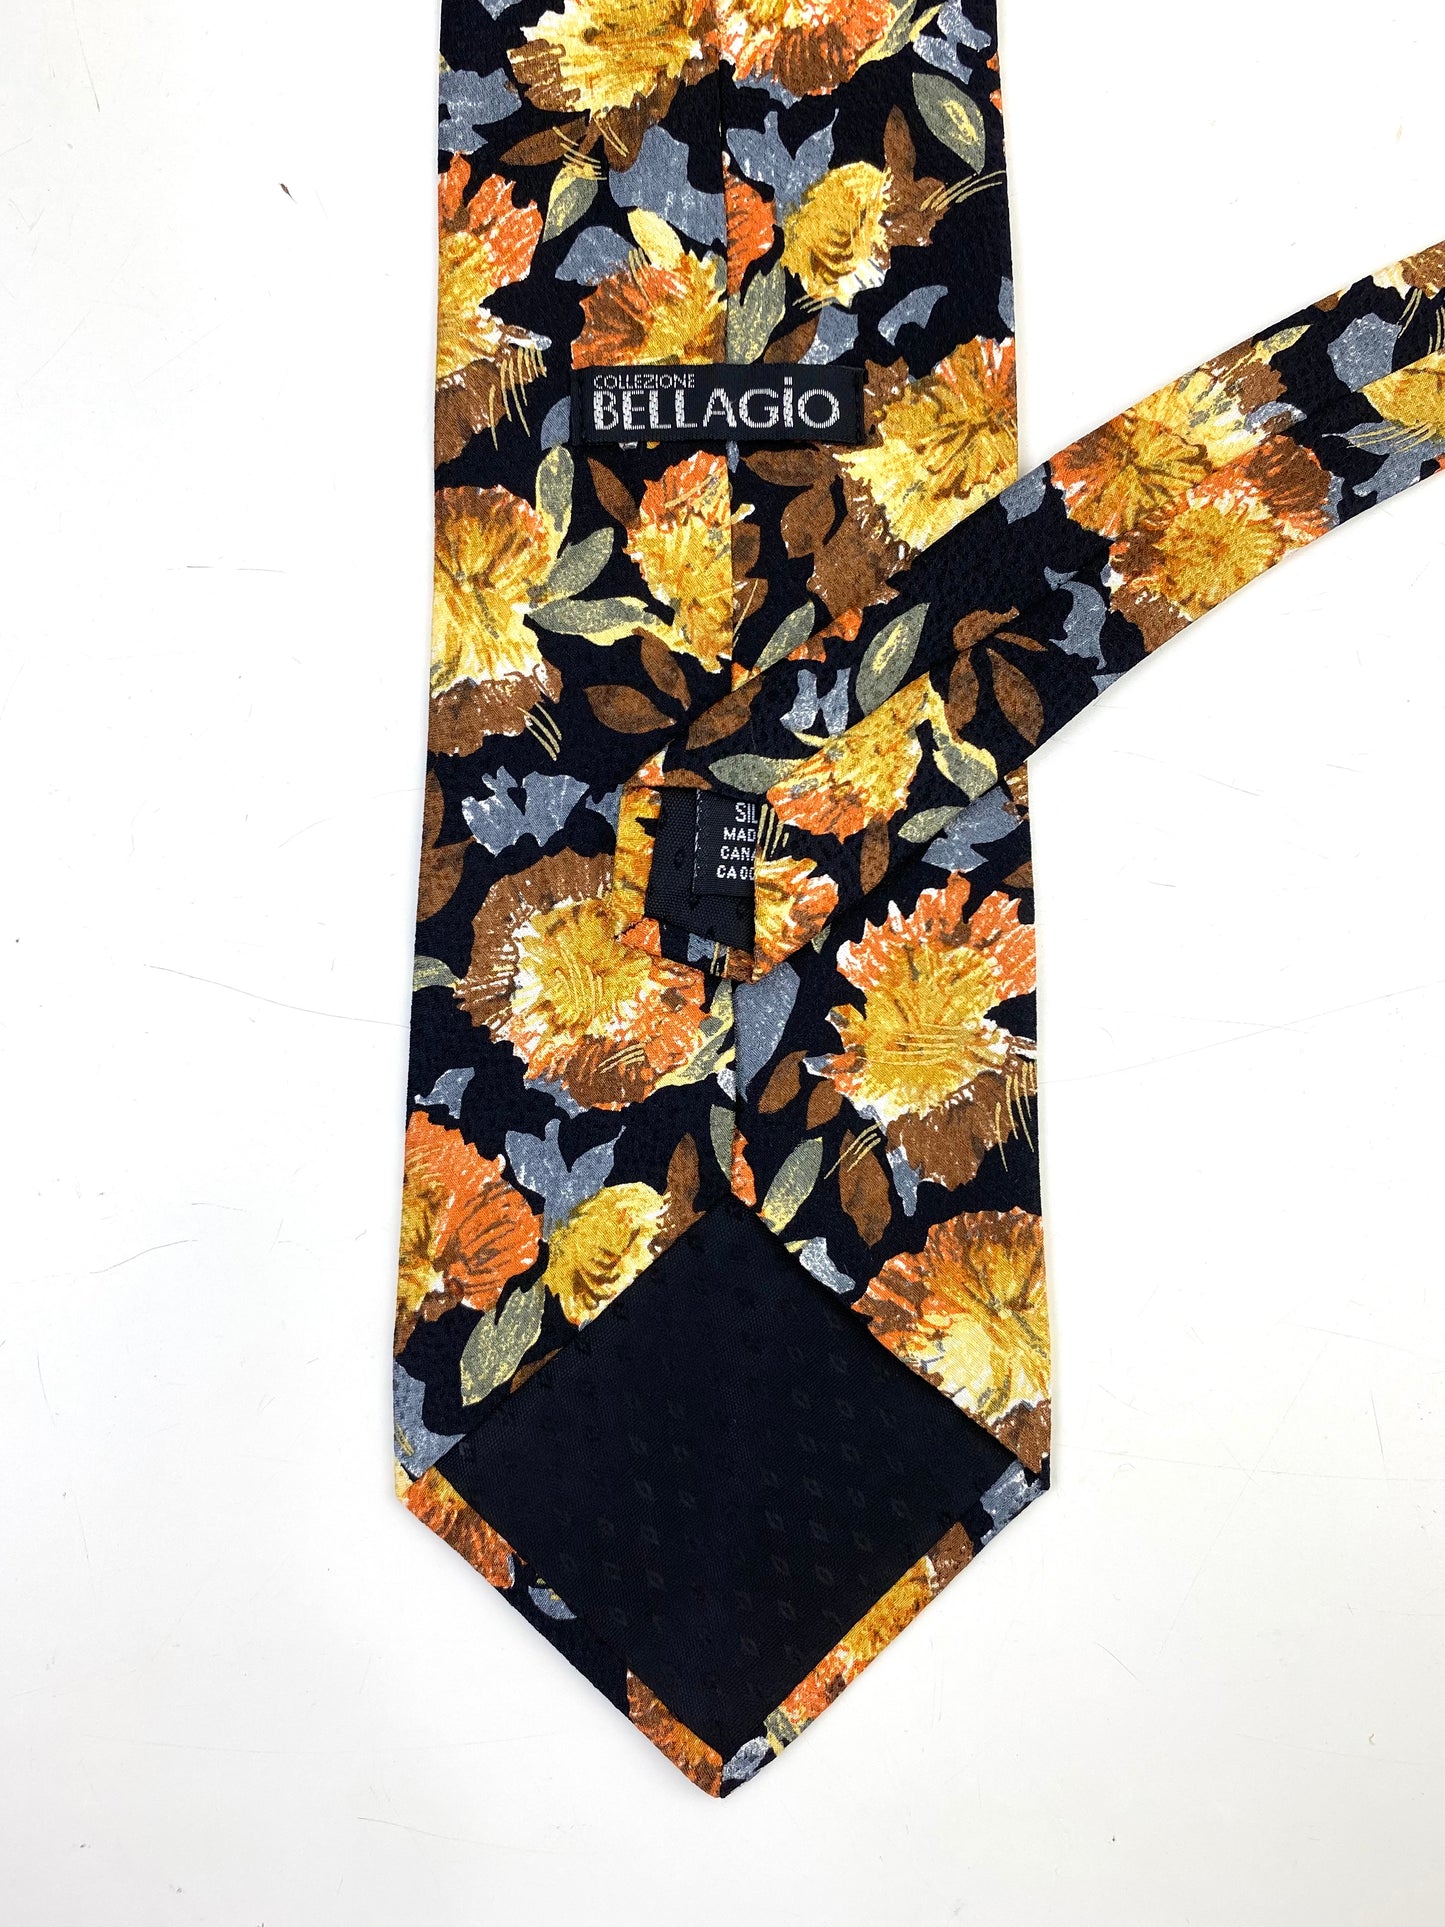 Back and labels of: 90s Deadstock Silk Necktie, Men's Vintage Gold Blue Floral Pattern Tie, Black Background, NOS